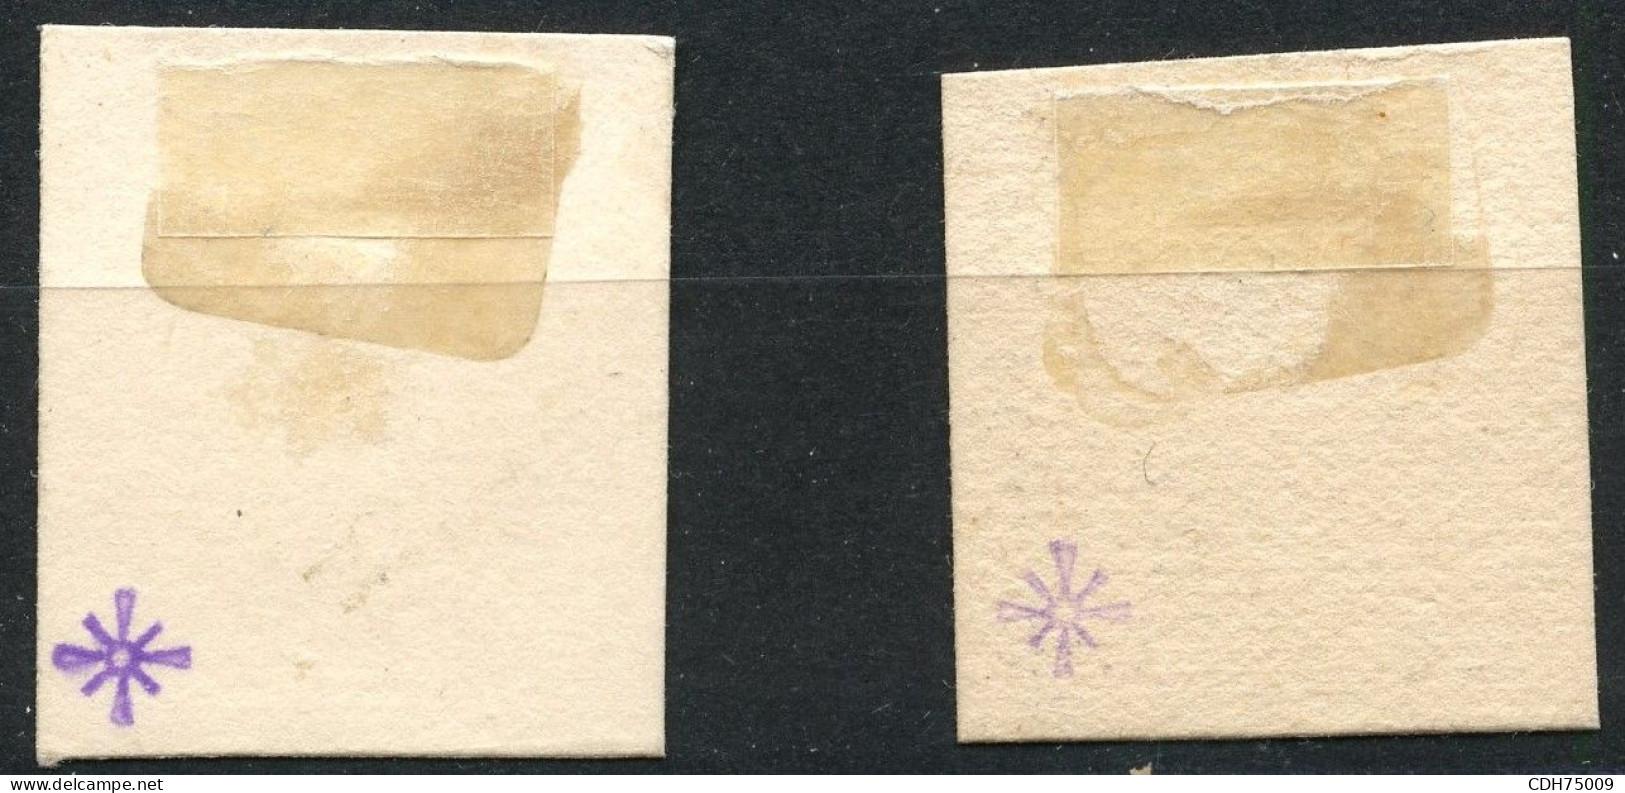 SUISSE - HELVETIA DEBOUT 25C BLEU - 2 EPREUVES SUR PAPIER CARTON (*)  - CERTIFICAT - Unused Stamps